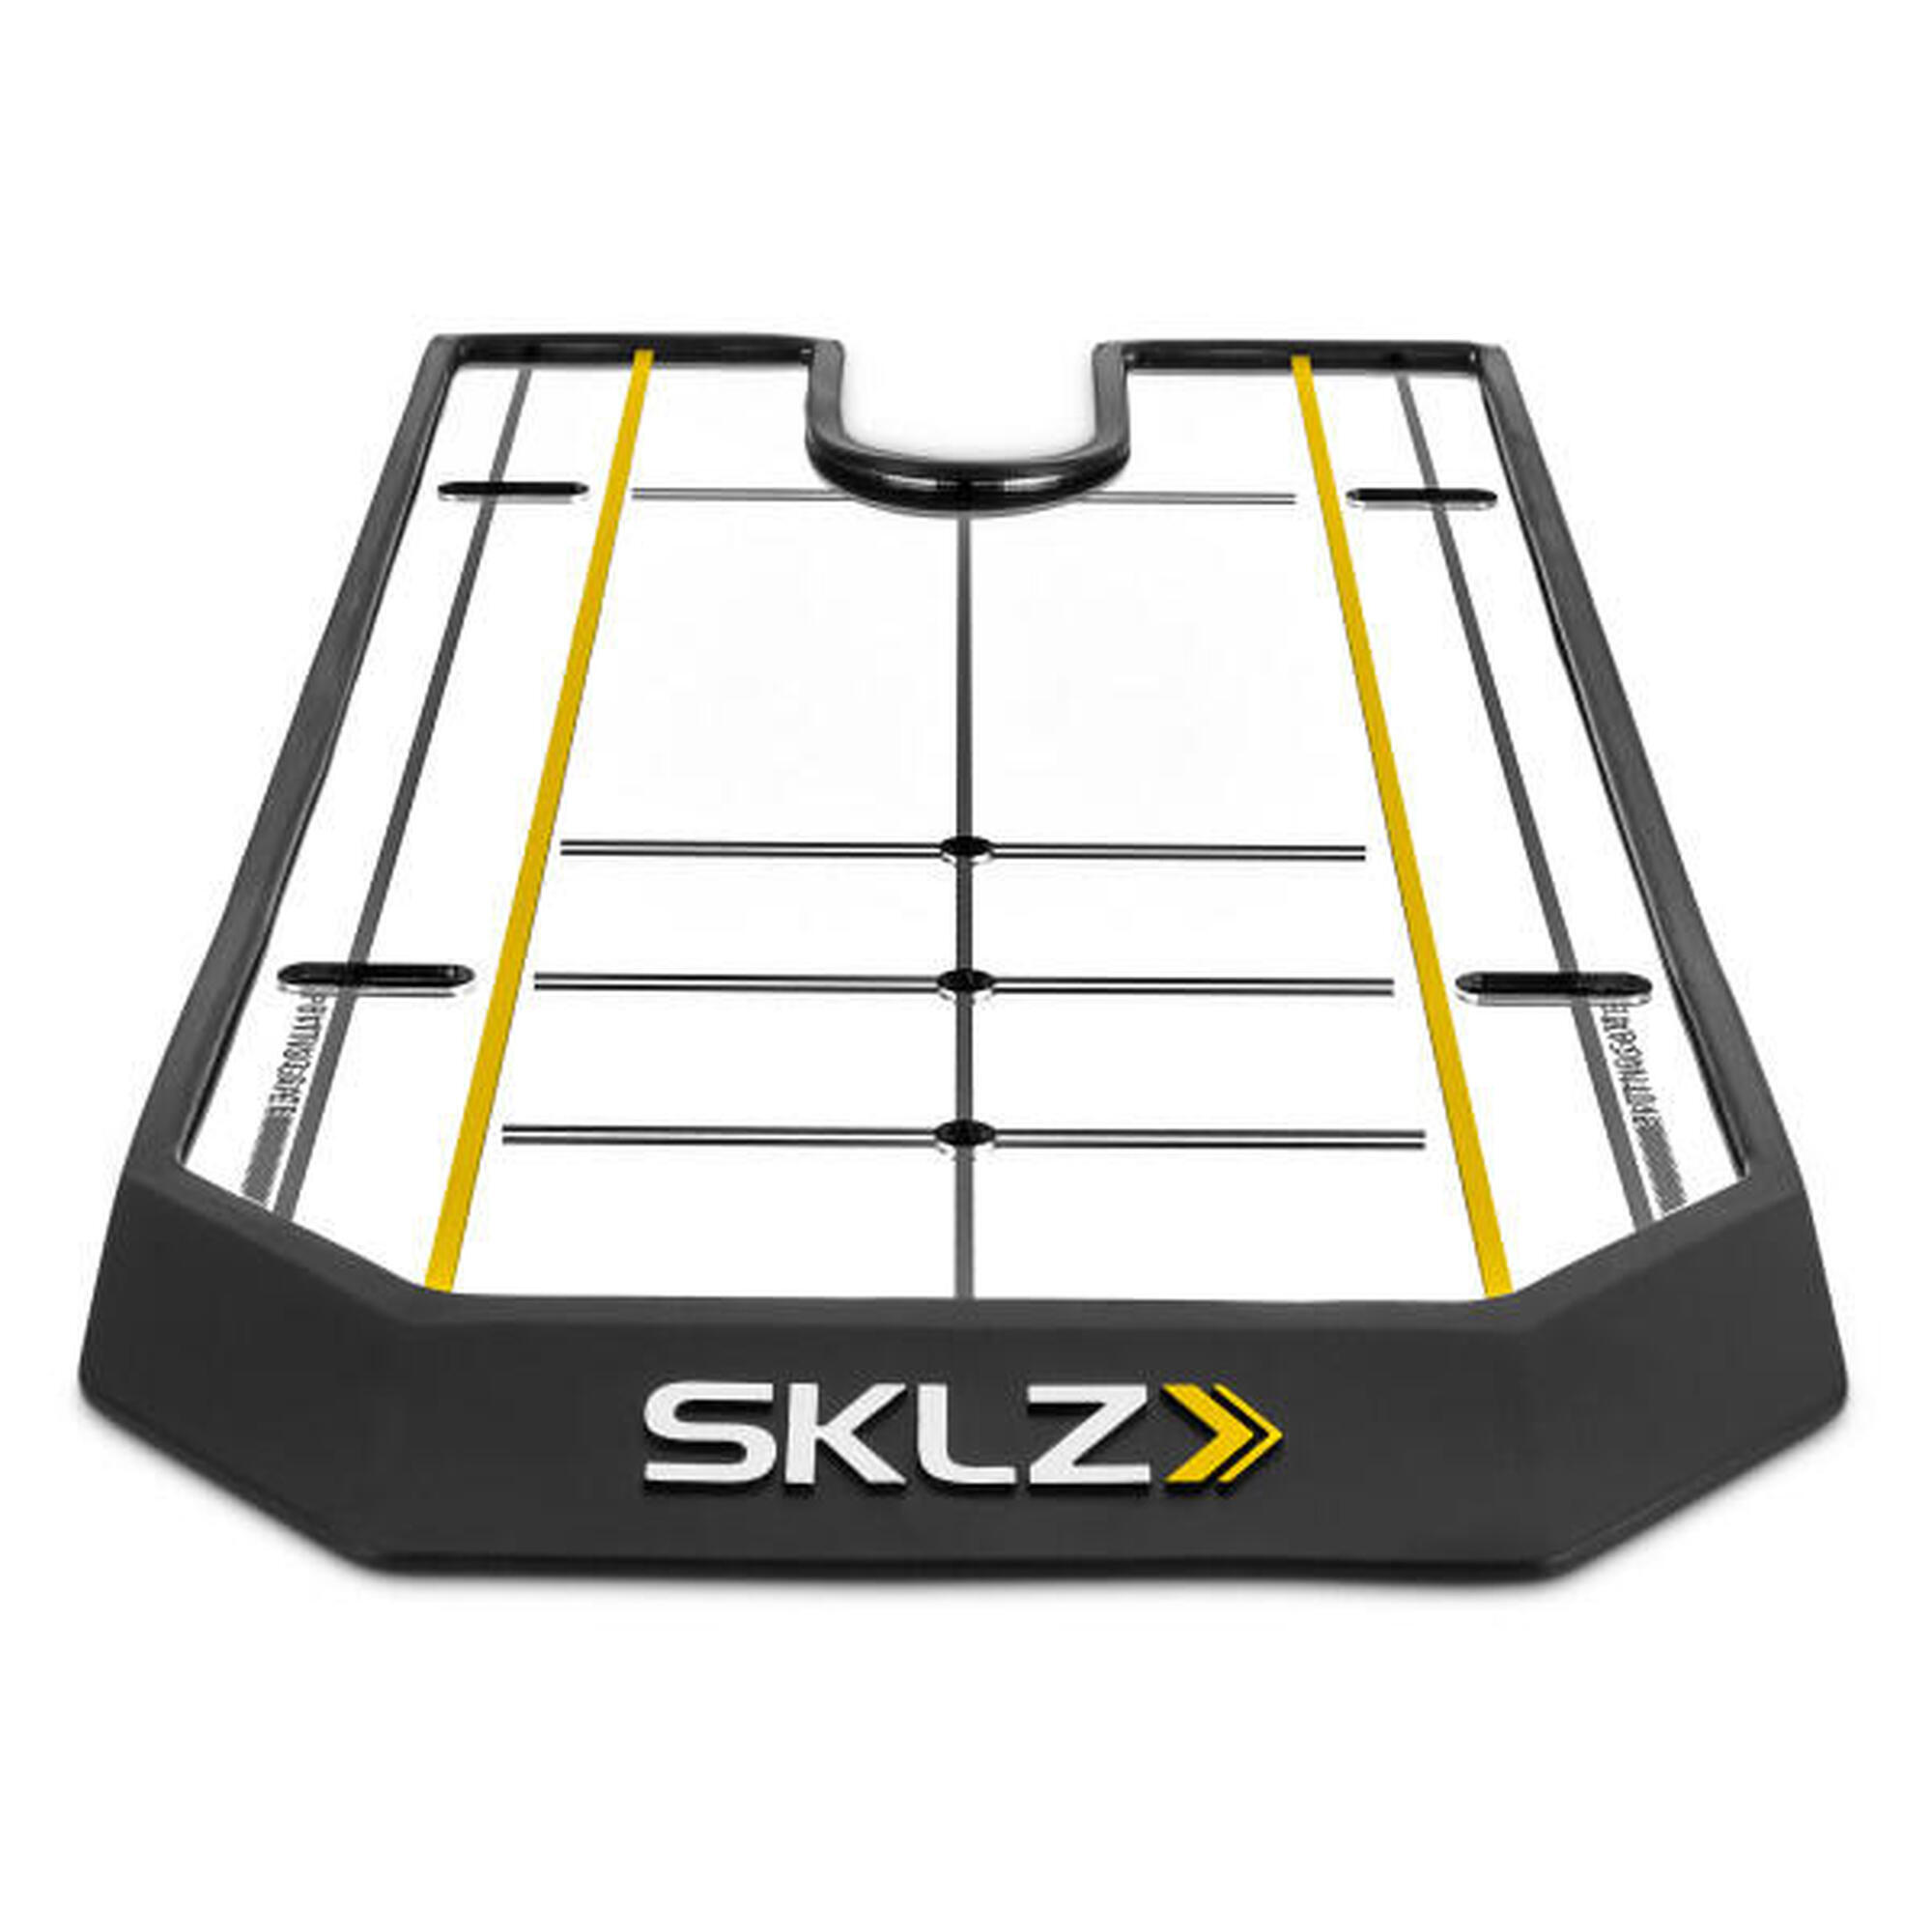 SKLZ -True Line Mirror : Perfeccione su putting para una alineación consistente